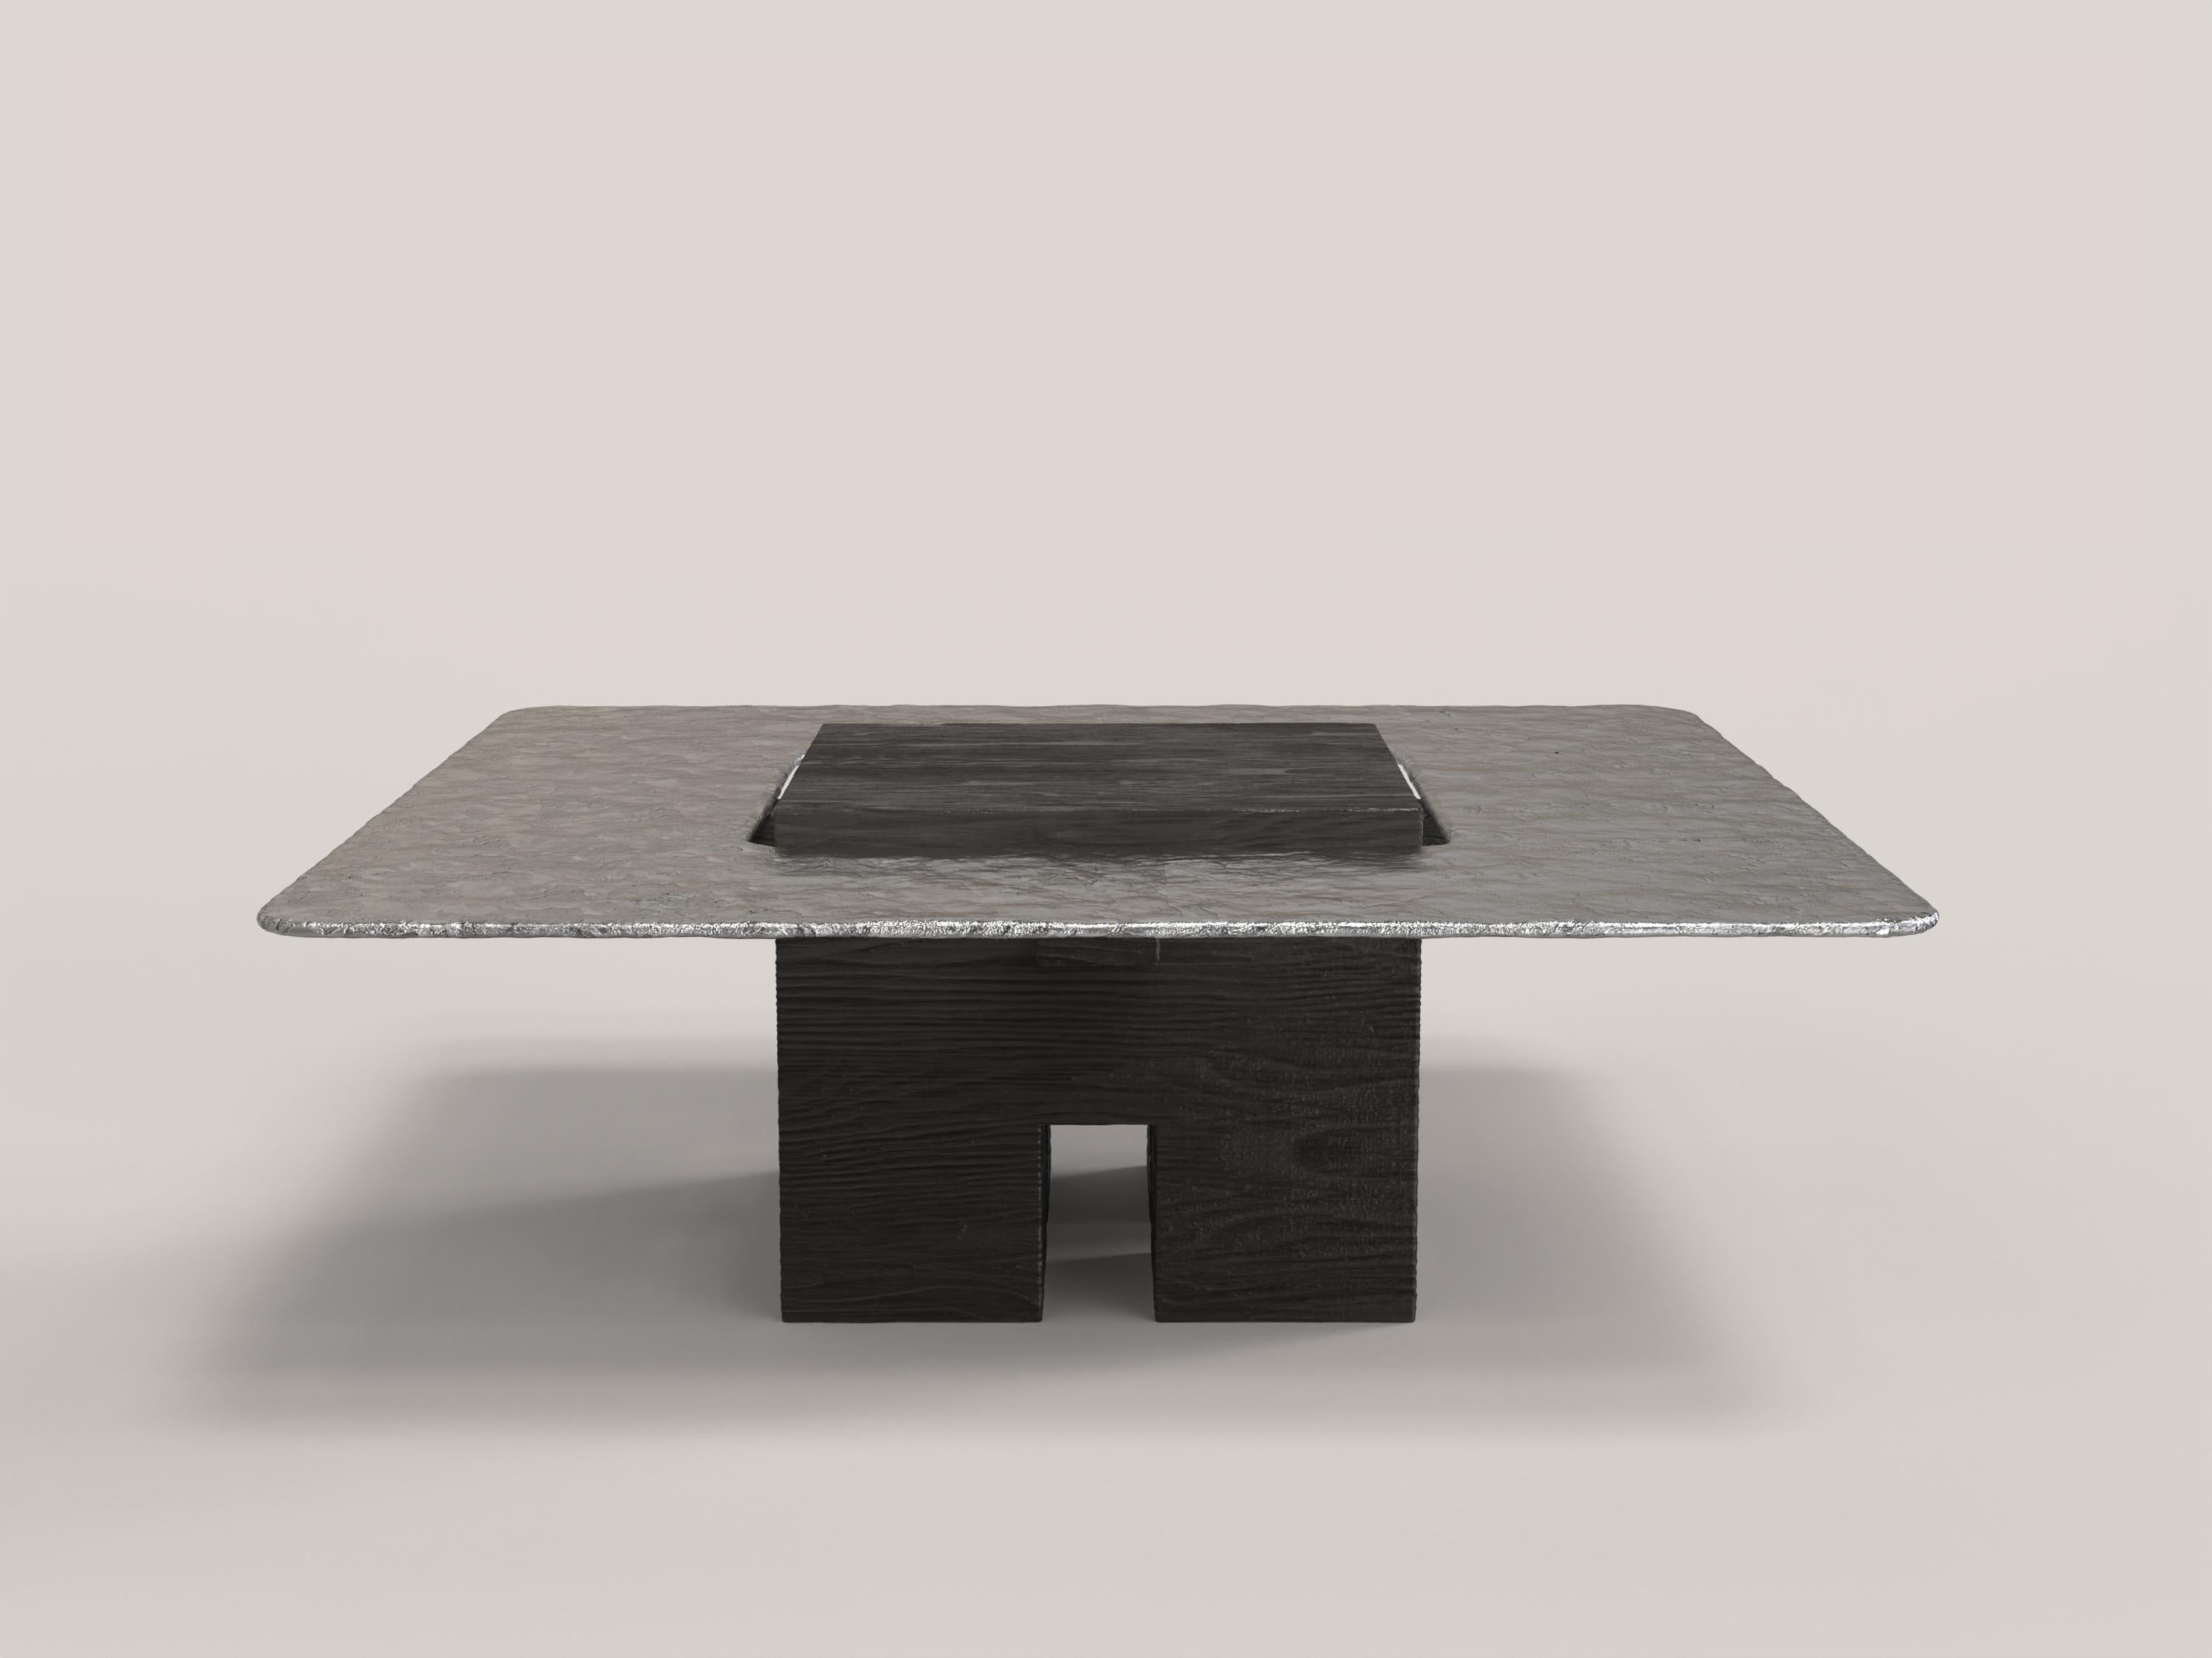 Tempio V2 est une table sculpturale du XXIe siècle réalisée par des artisans italiens en aluminium et en bois de chêne peint en noir. La pièce est fabriquée en une édition limitée de 150 exemplaires signés et progressivement numérotés. Il fait